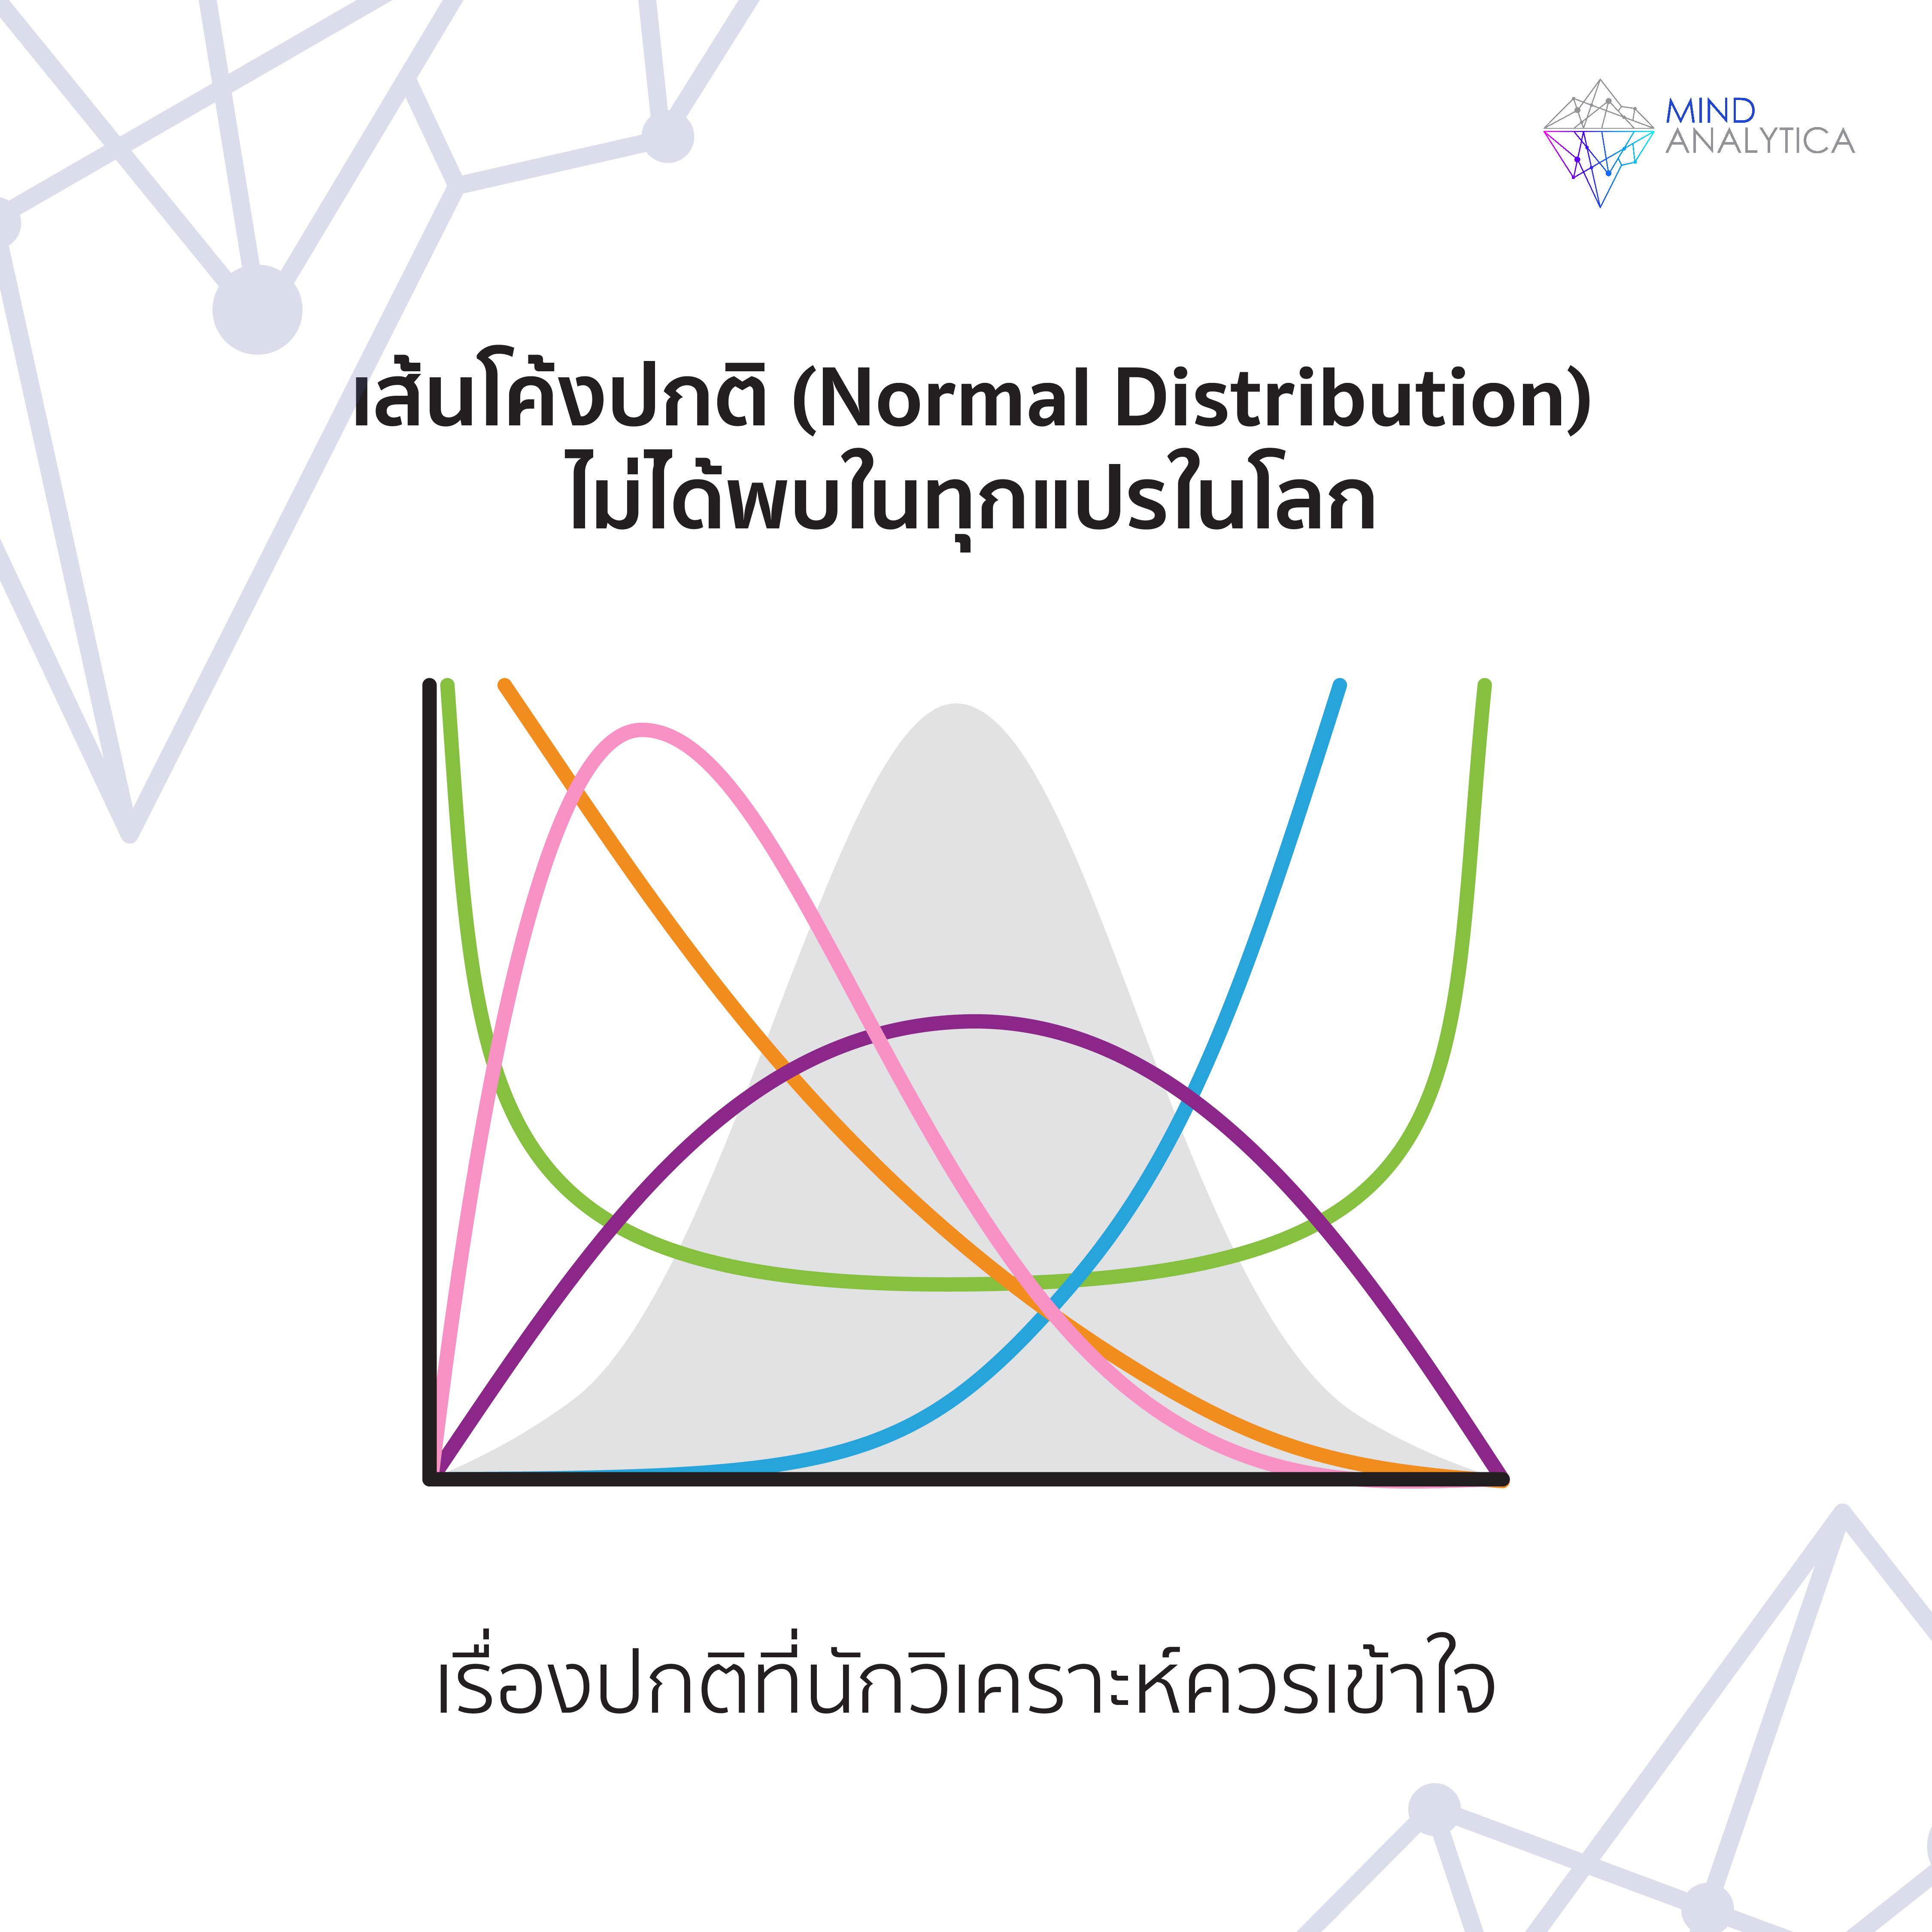 เส้นโค้งปกติ (Normal Distribution) ไม่ได้พบในทุกตัวแปรในโลก เรื่องปกติที่นักวิเคราะห์ควรเข้าใจ